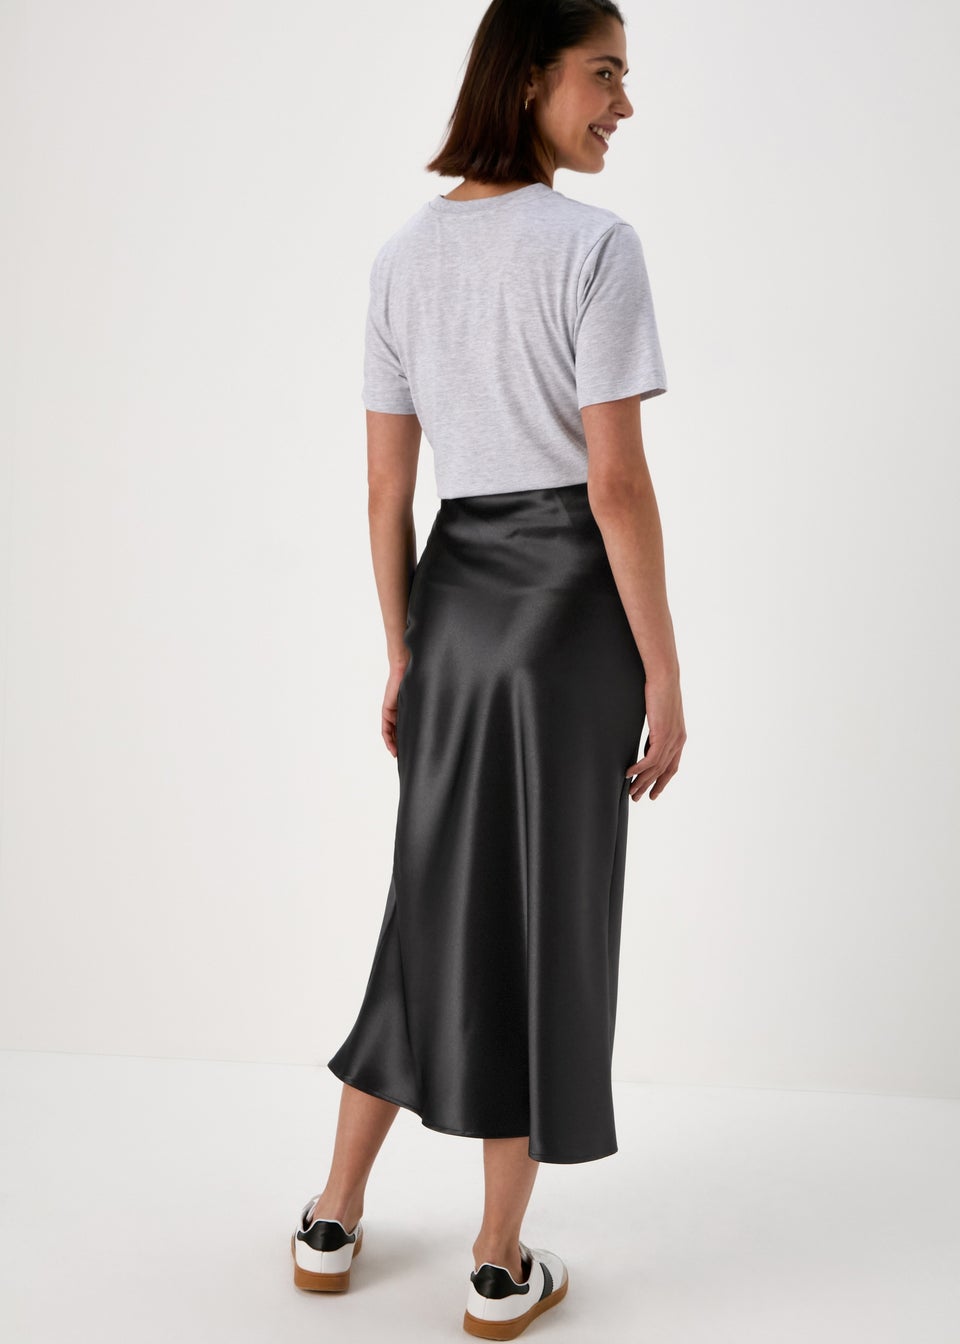 Papaya Black Satin Midi Skirt